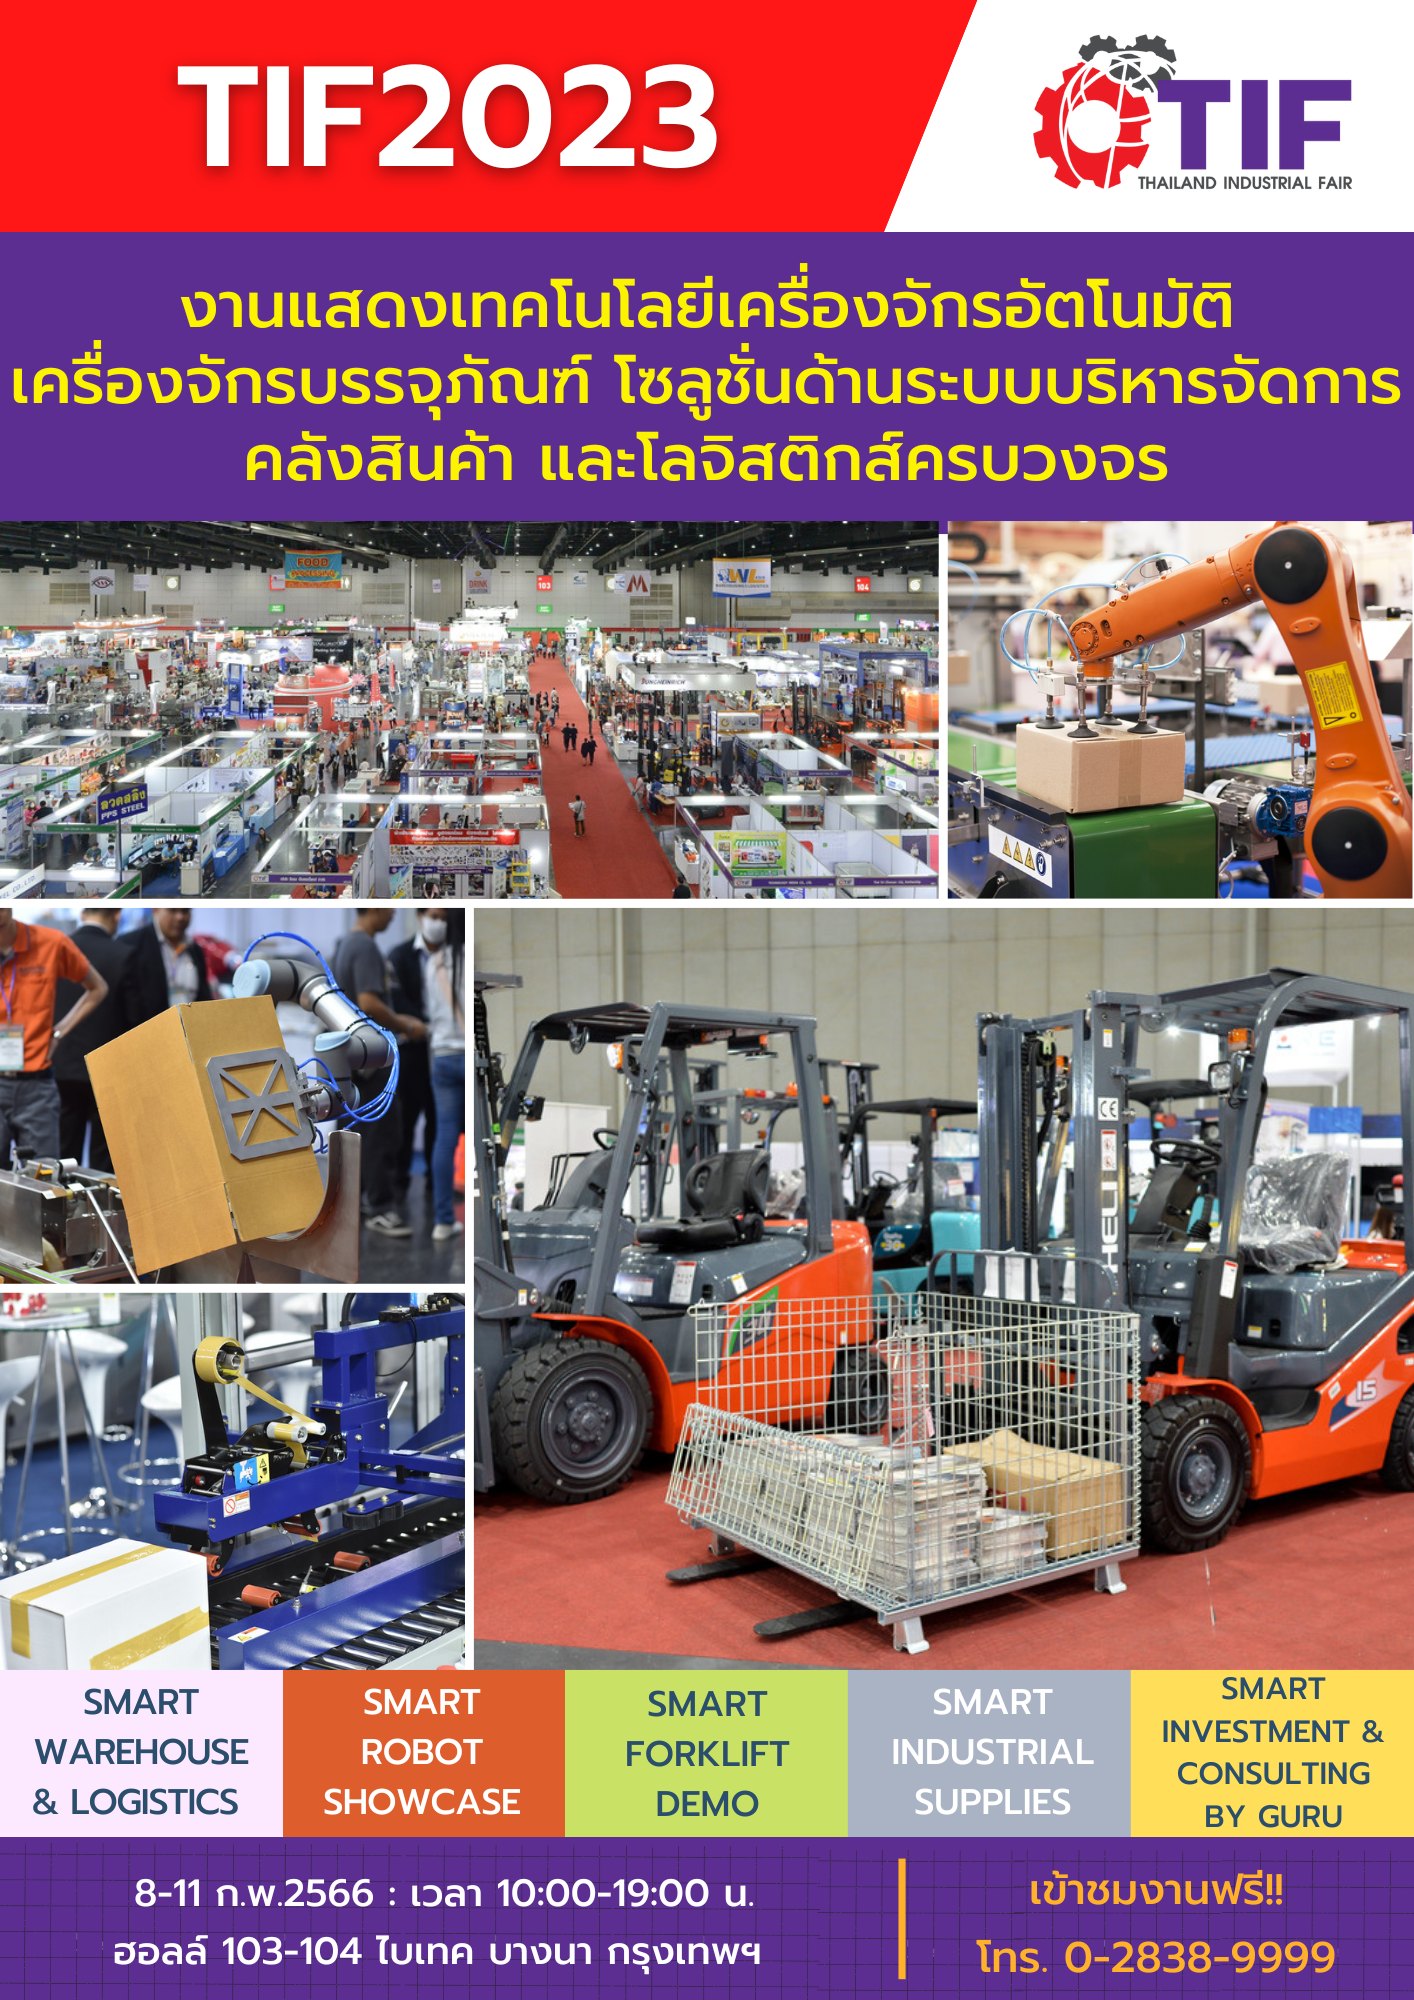 Thailand Industral Fair 2566 (TIF 2023)